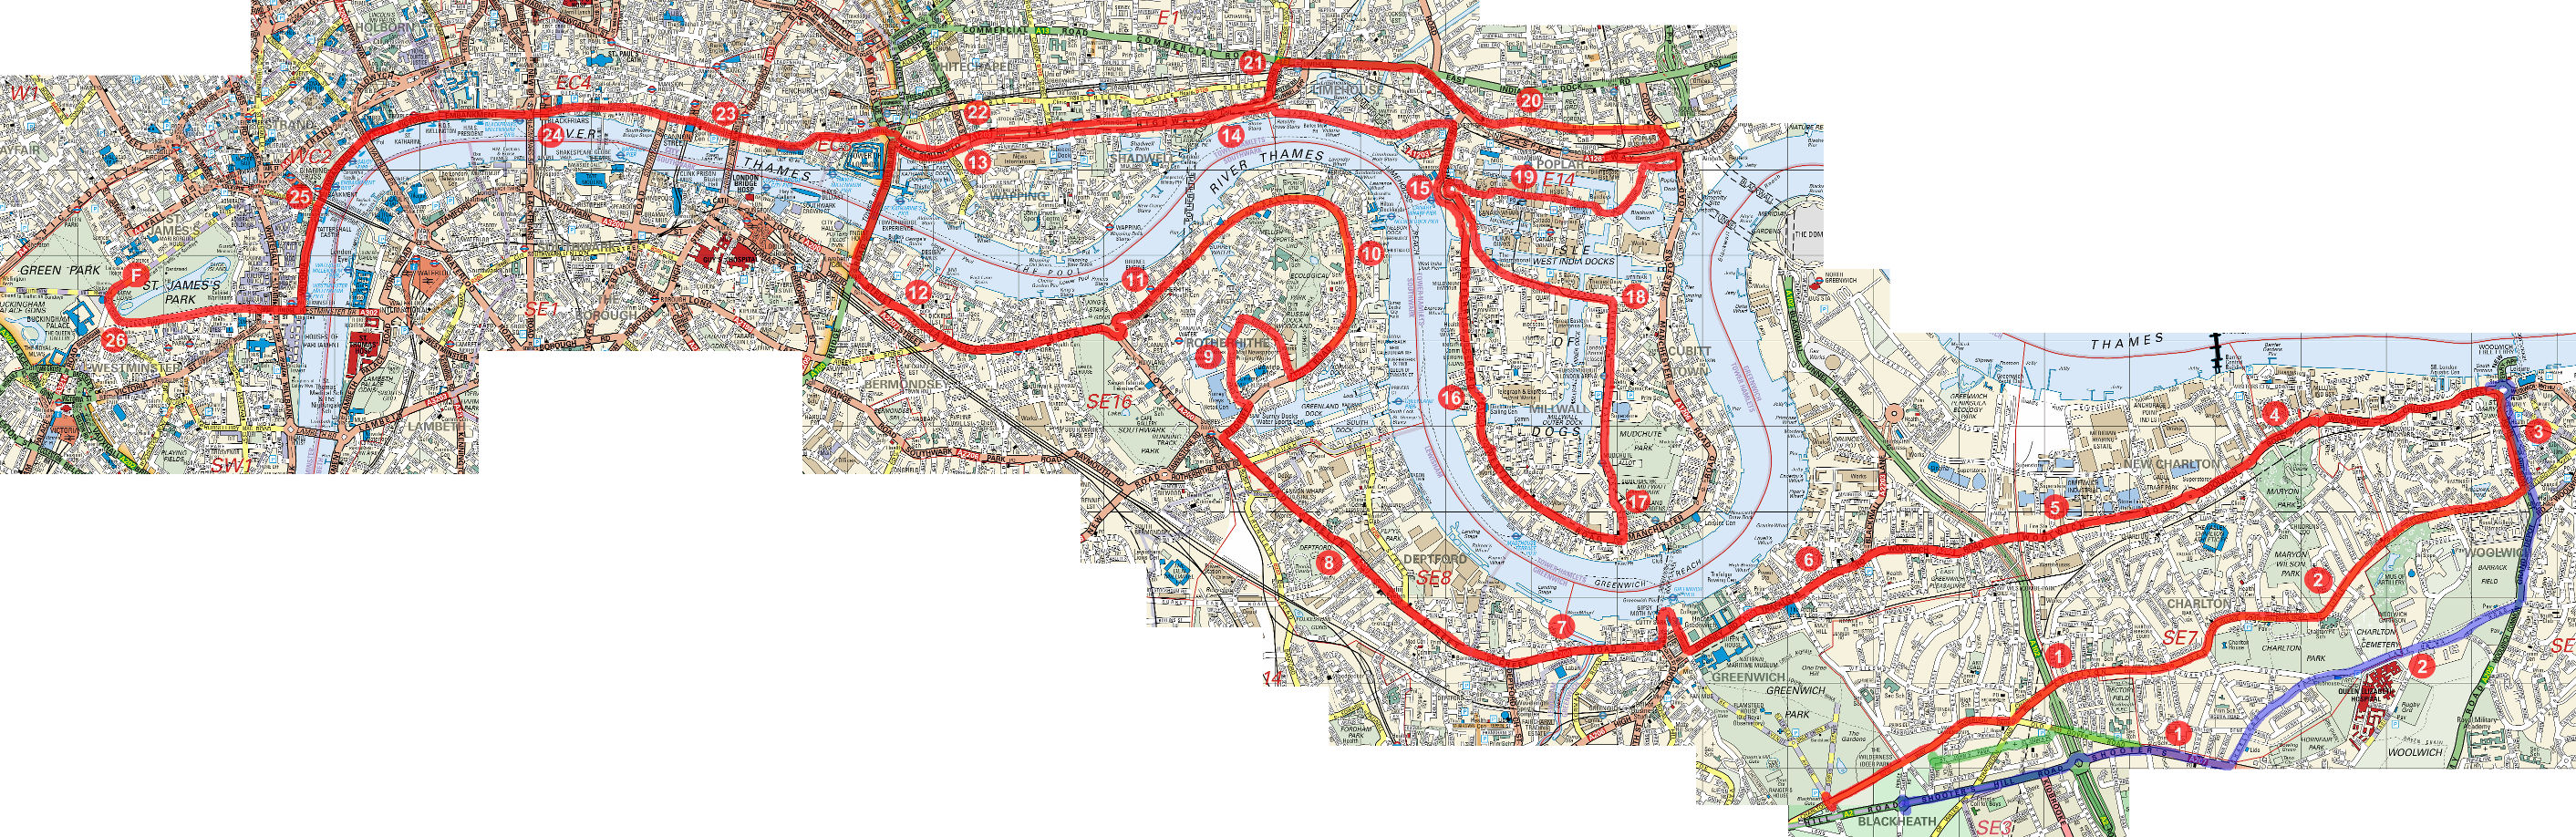 London Marathon course map